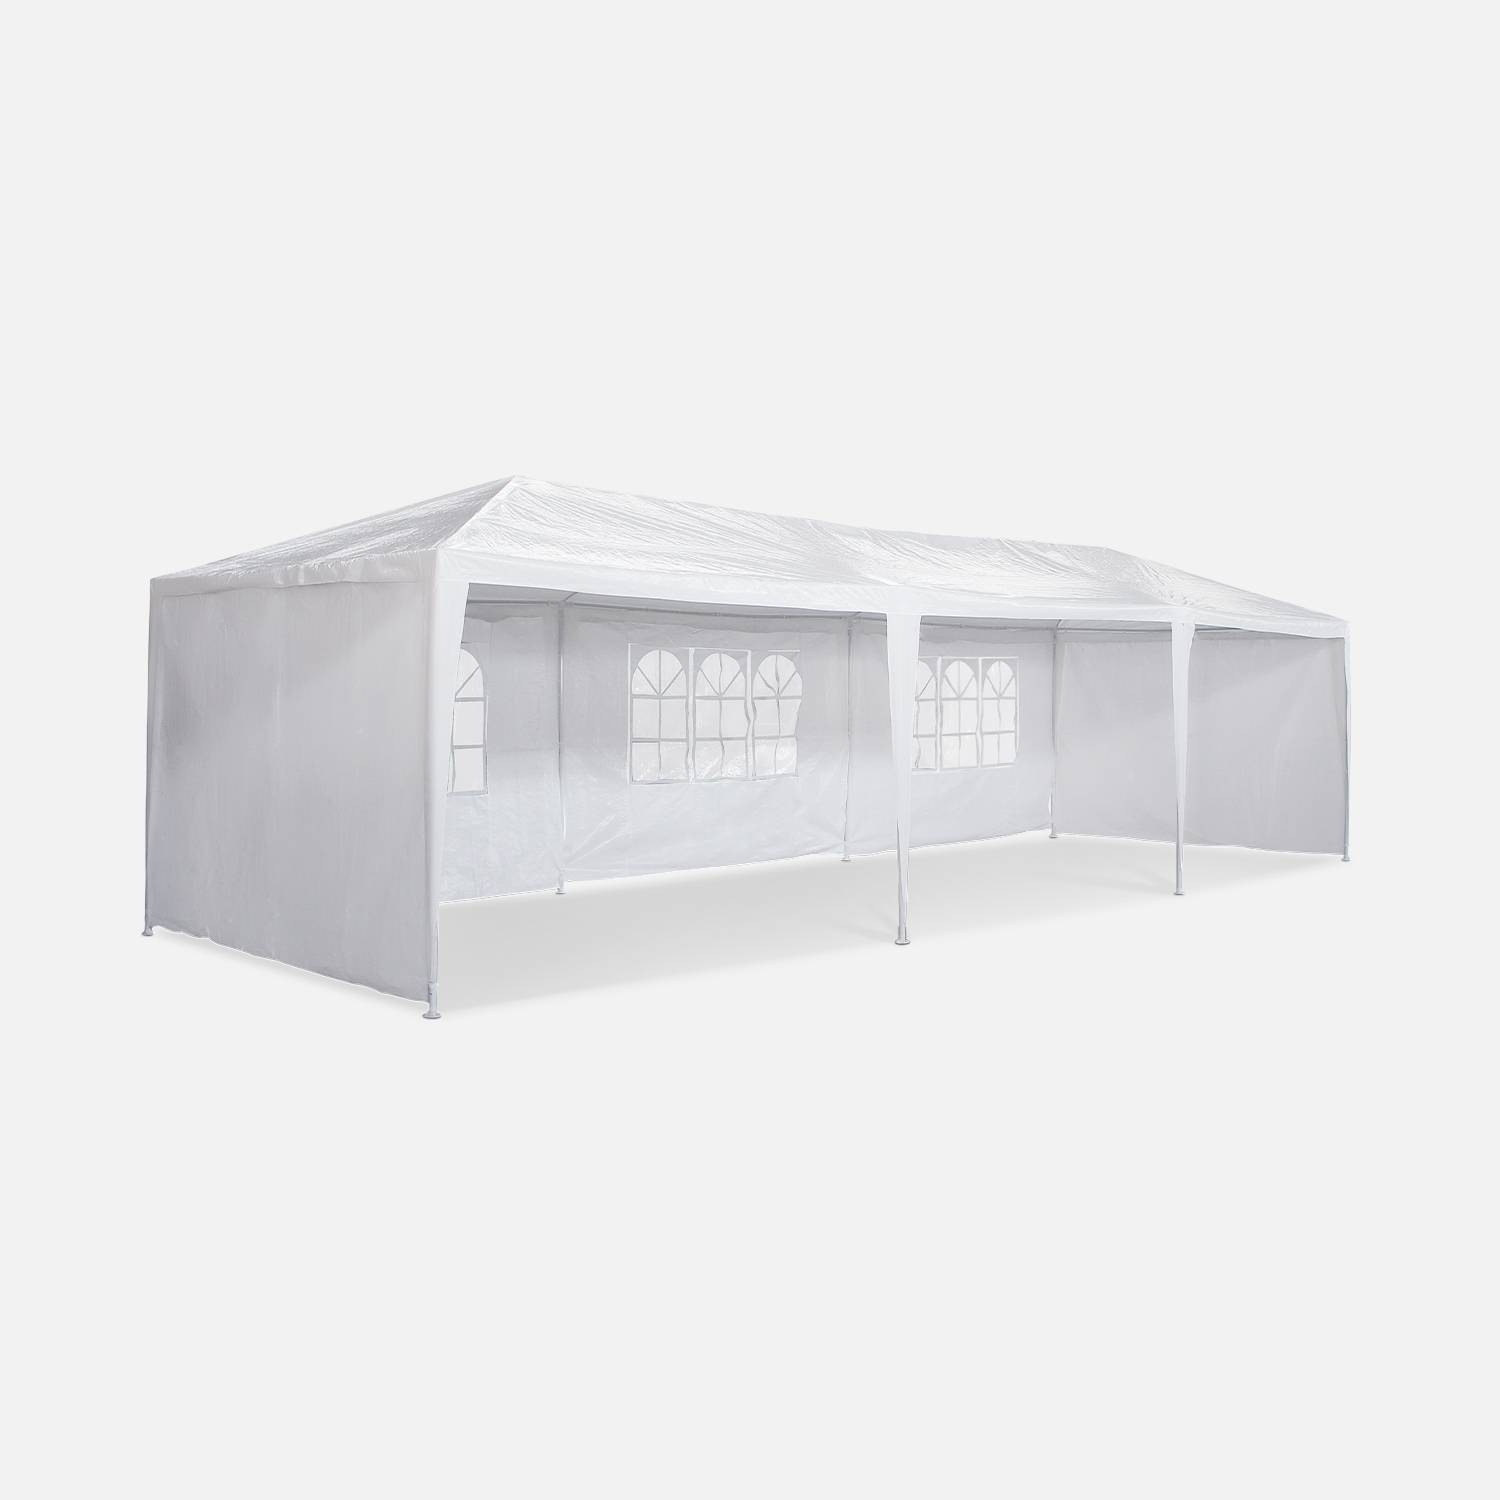 Tenda per ricevimenti 3x9m, 27 m² - Massilia - Bianco - Può essere utilizzata come padiglione, pergola, tenda da giardino, tendone o pergolato. Photo3